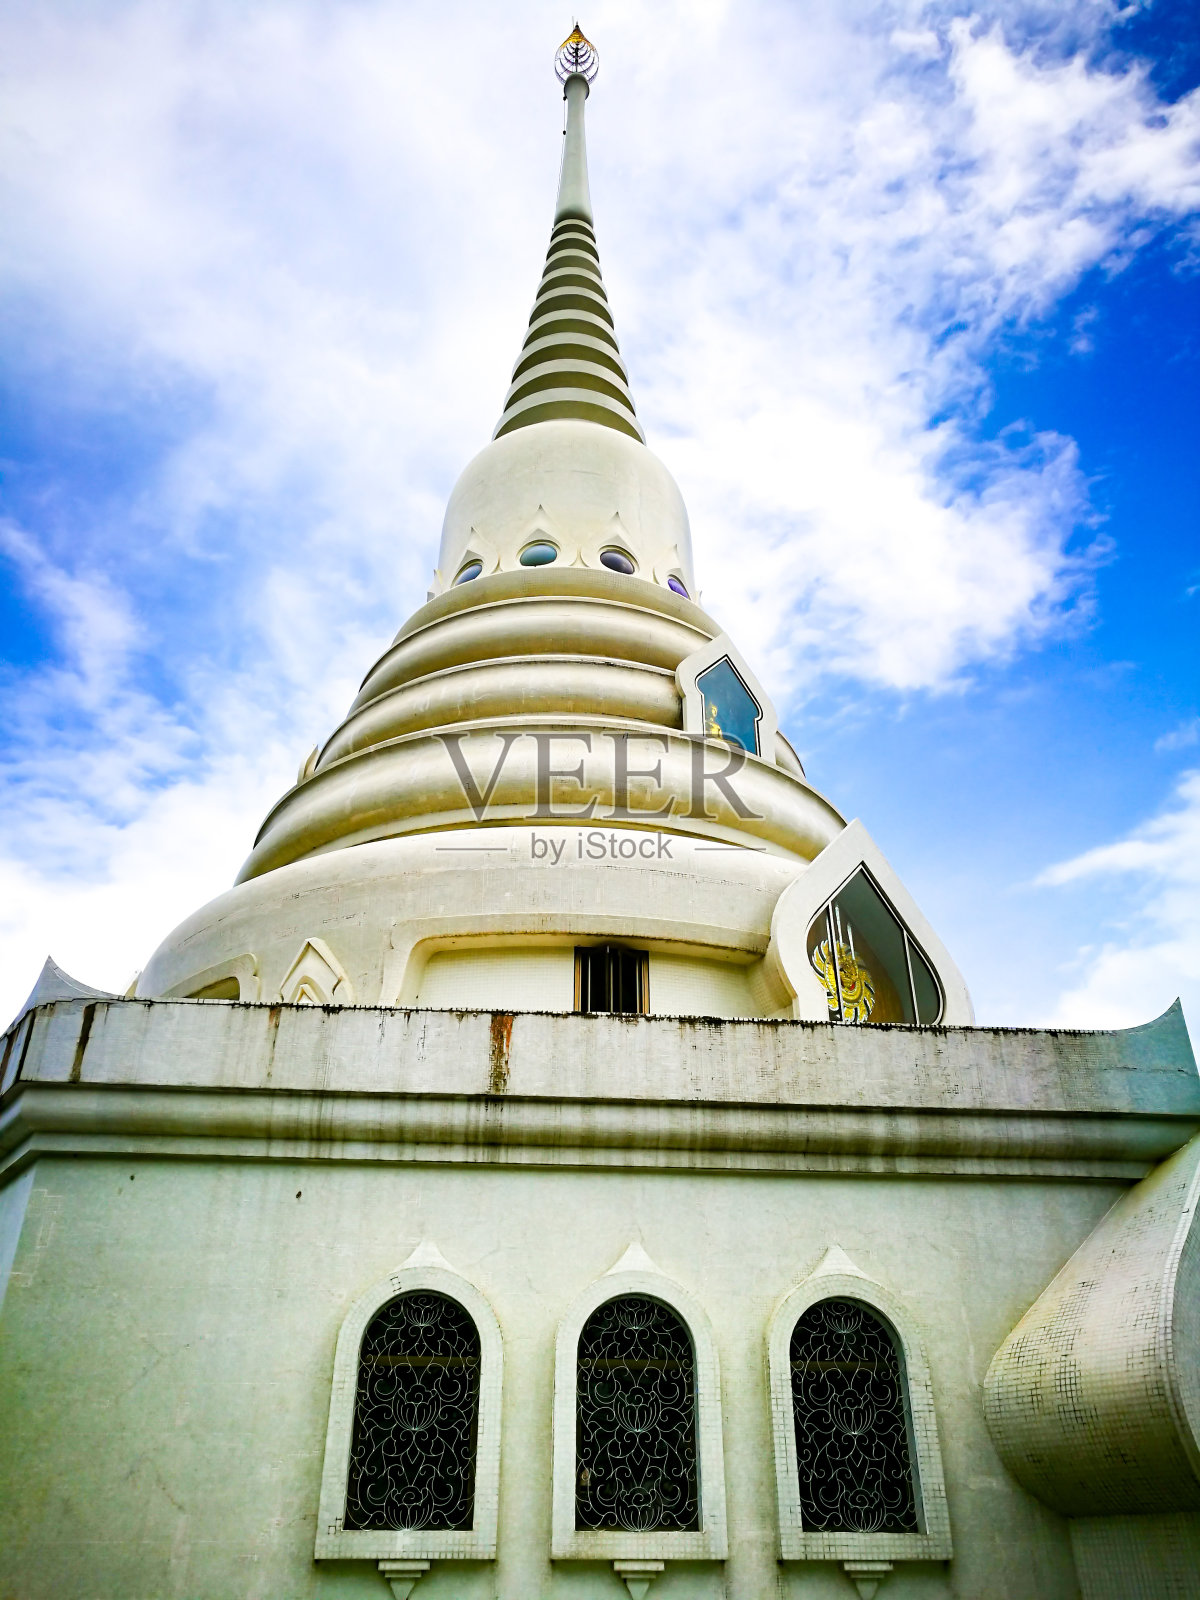 泰国芭堤雅春武里。泰国凉亭寺(sala) Wat Yannasangwararam照片摄影图片